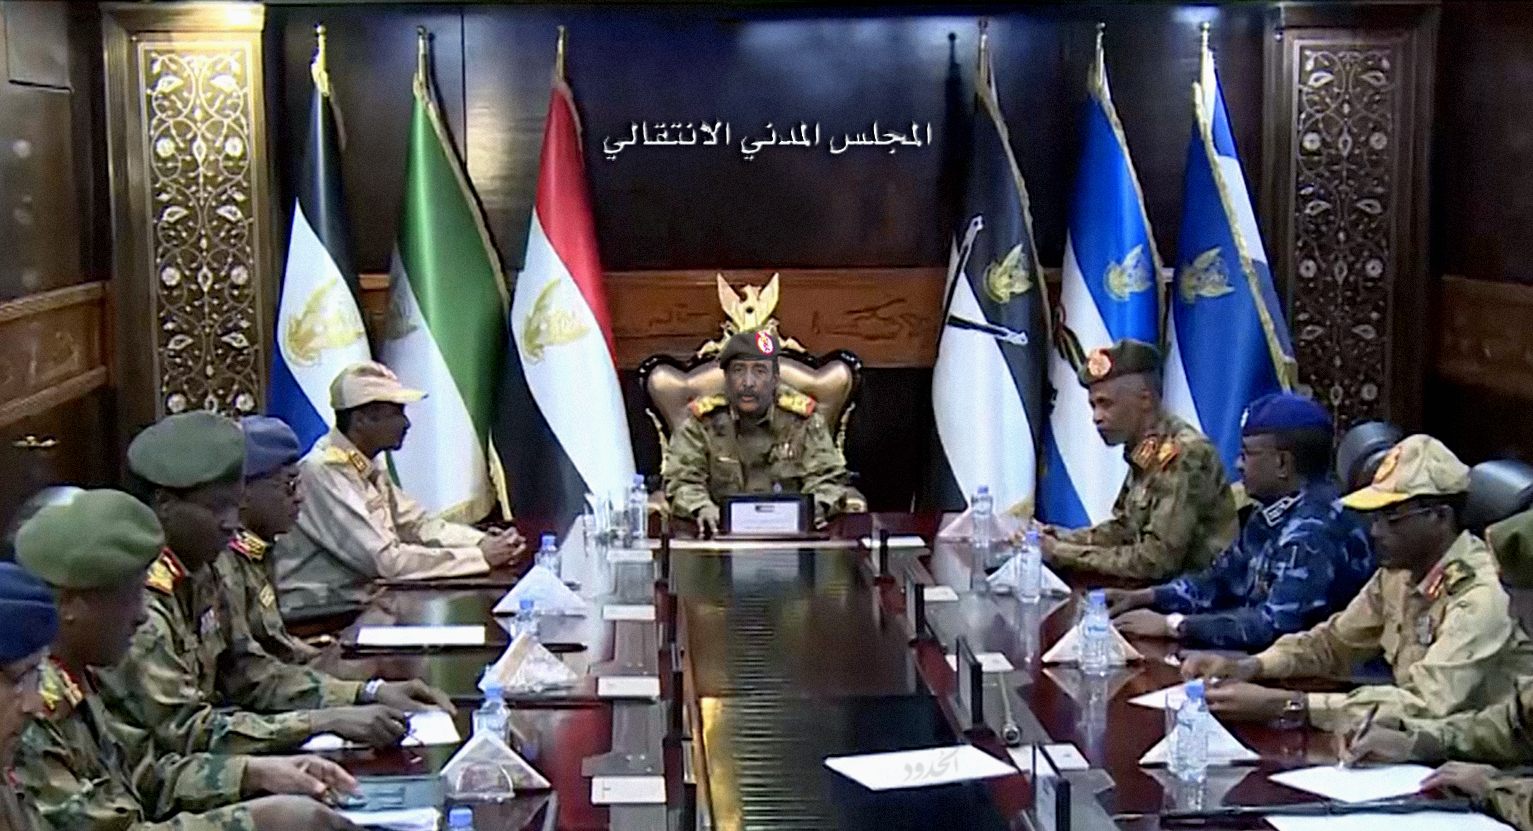 صورة الجيش السوداني يوافق على نقل السلطة إلى مجلس مدني ثمَّ قيادته وتعيين أعضائه